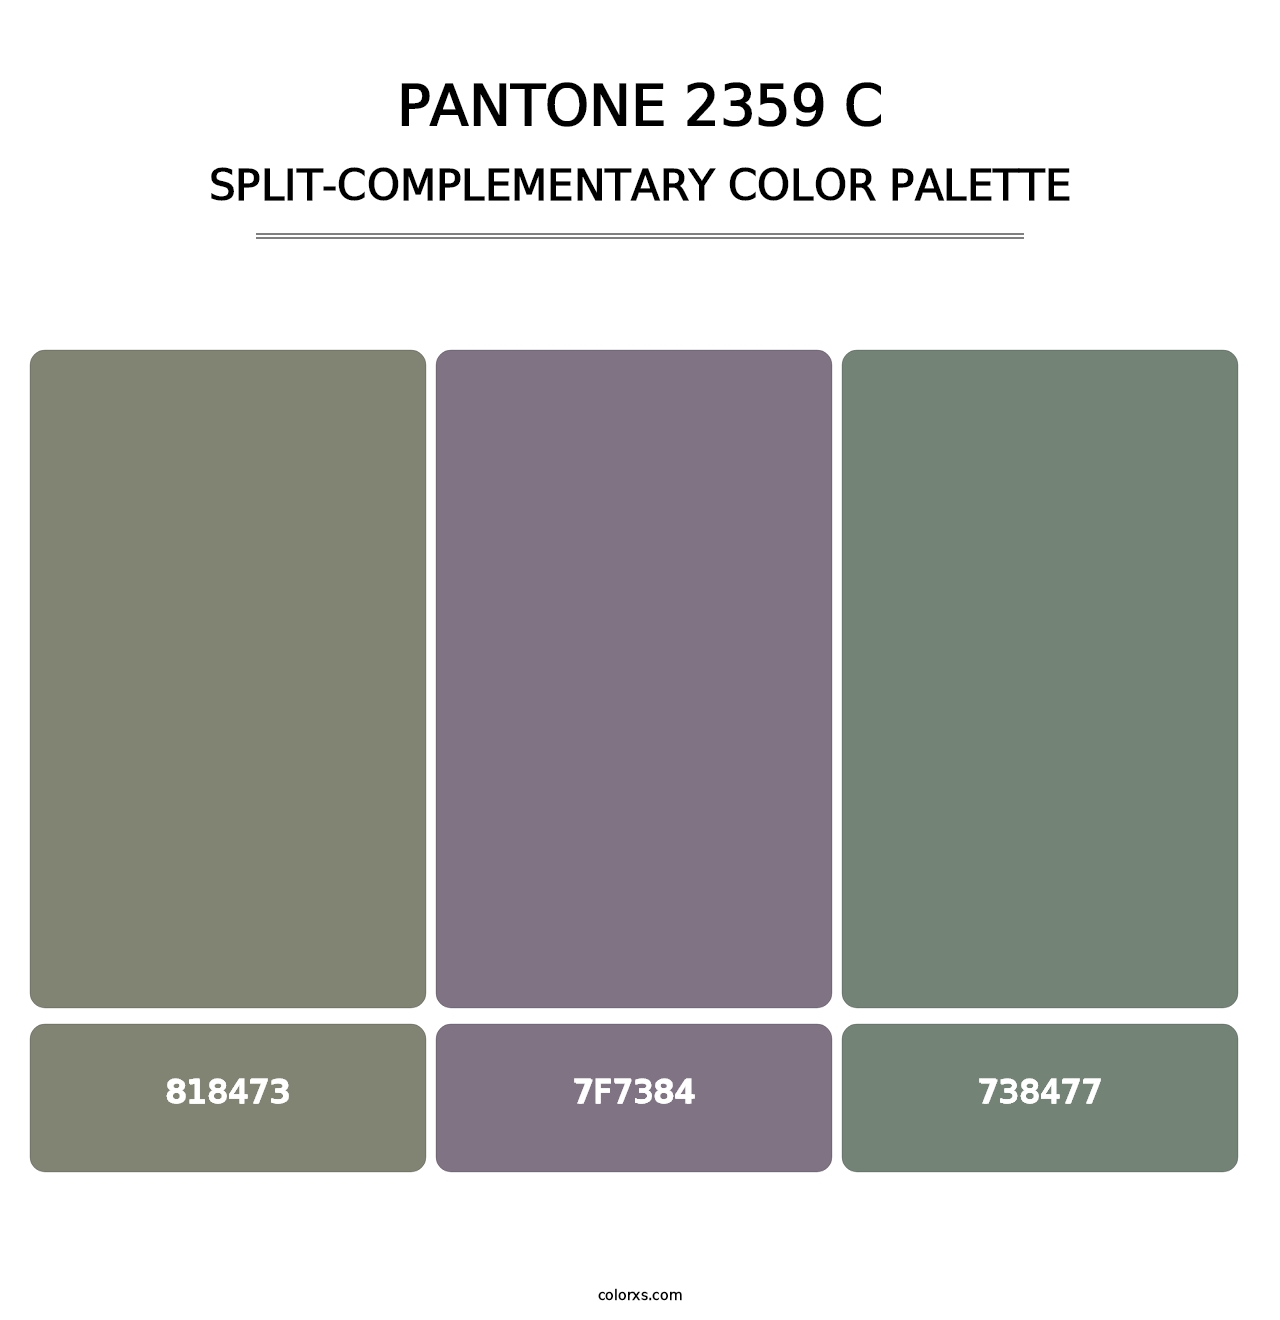 PANTONE 2359 C - Split-Complementary Color Palette